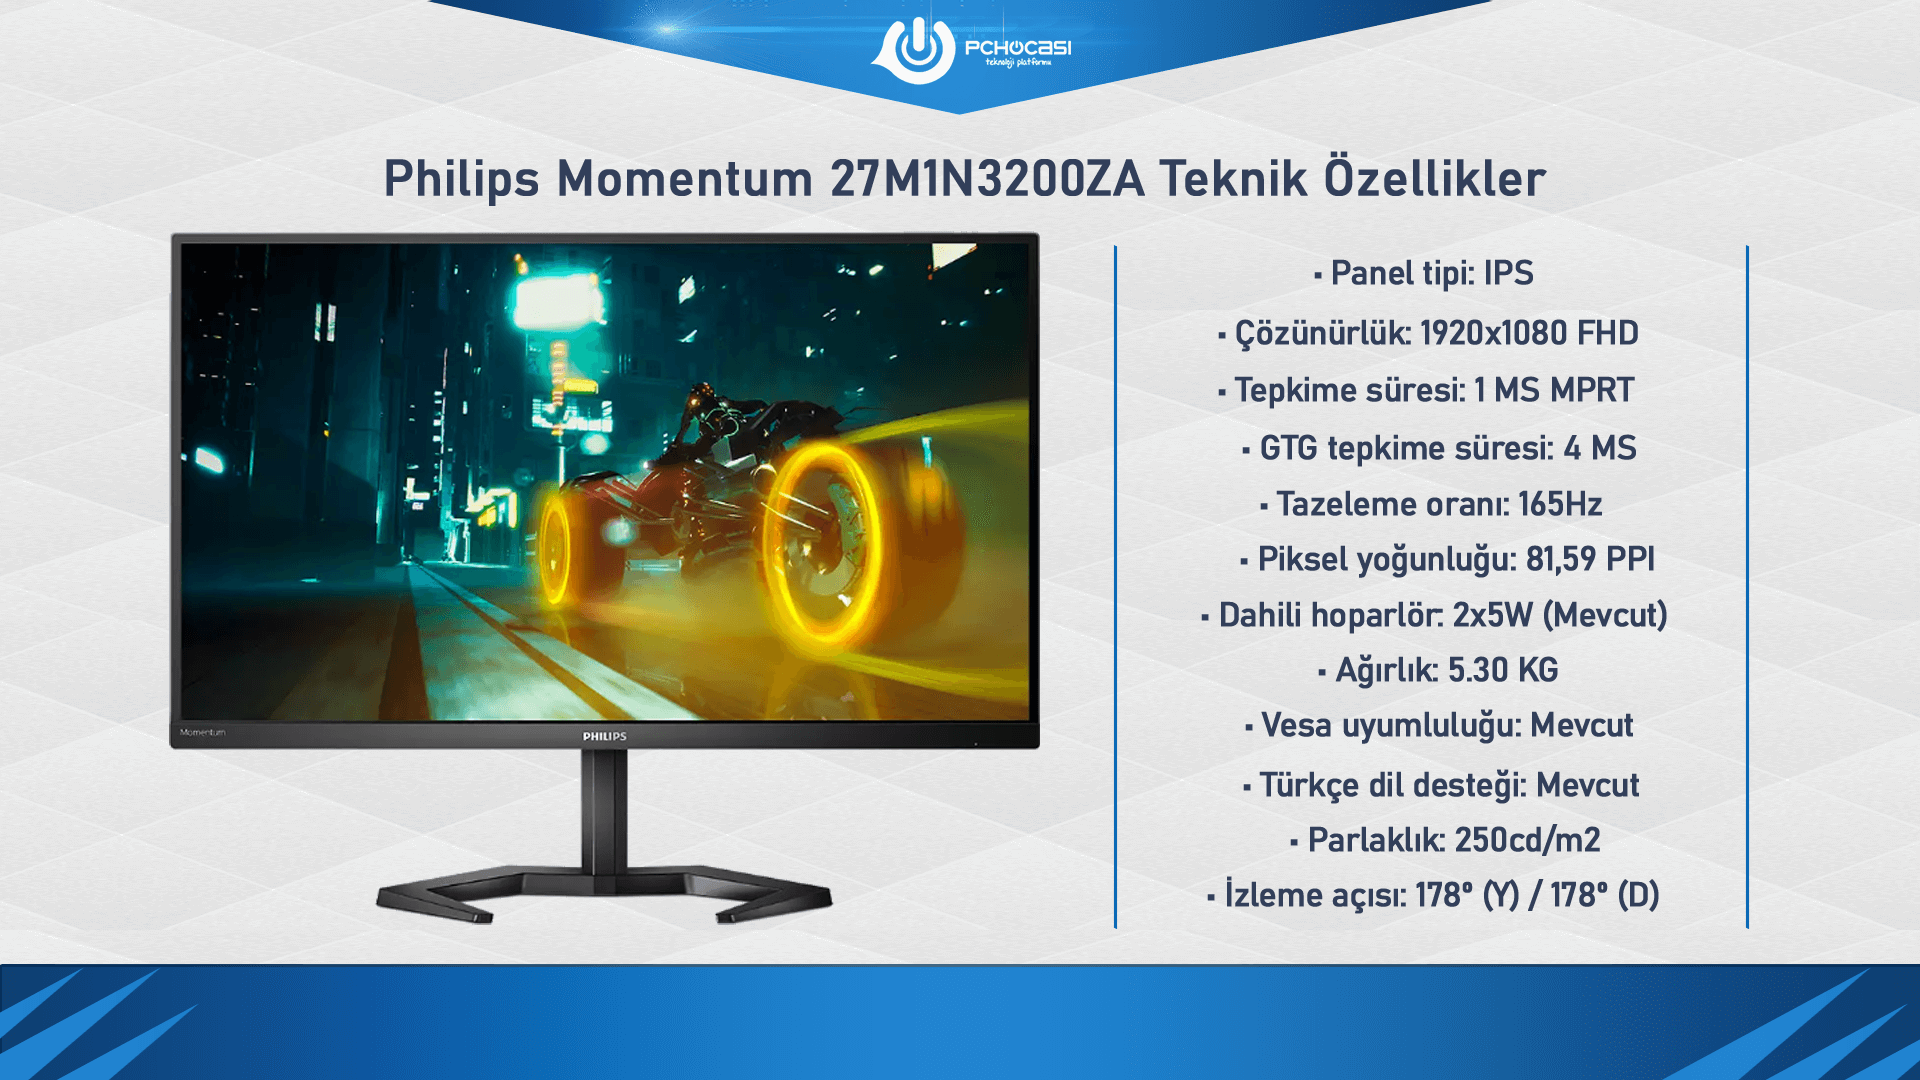 Philips Momentum 27M1N3200ZA